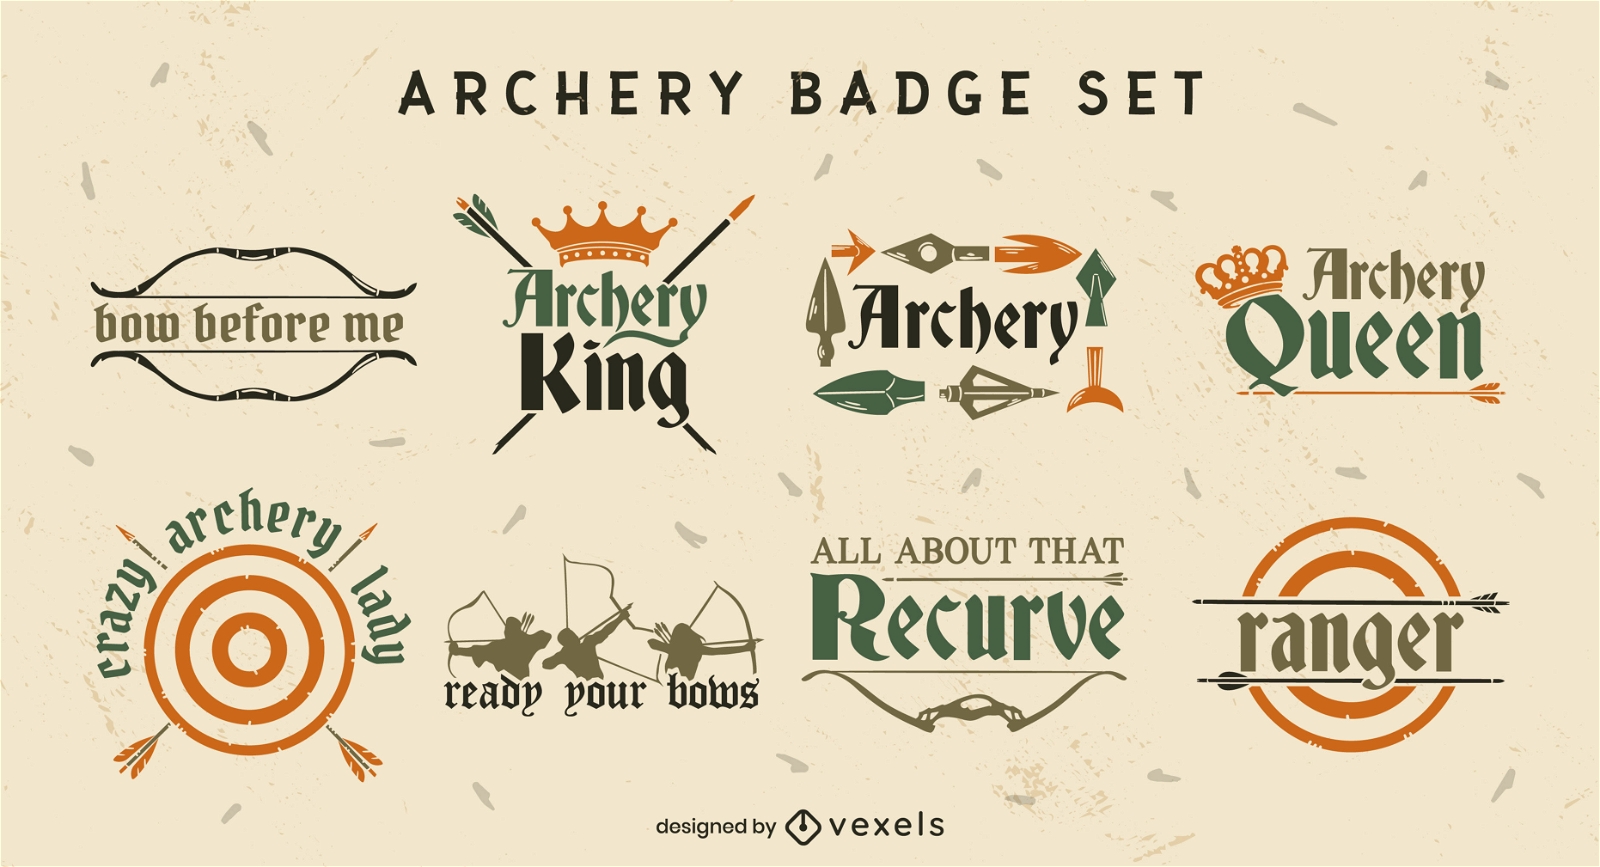 Archery badges flat set